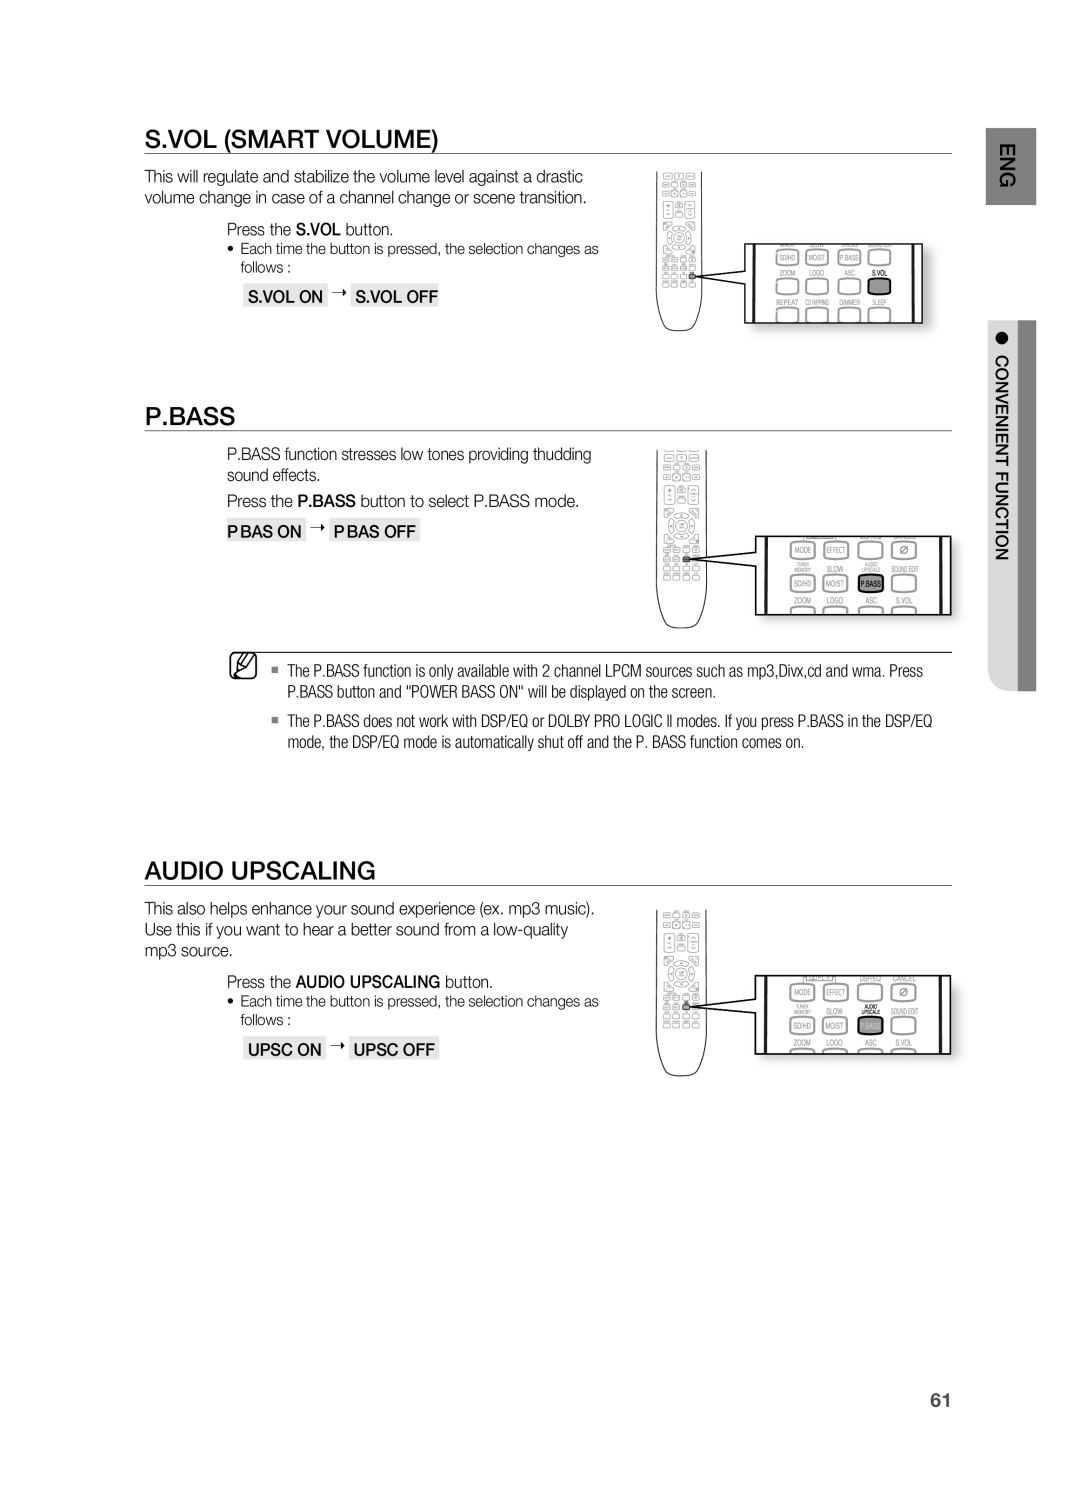 Samsung HT-X725G, HT-TX725G user manual S.VOL SMArT VOLUME, P.Bass, Audio Upscaling 